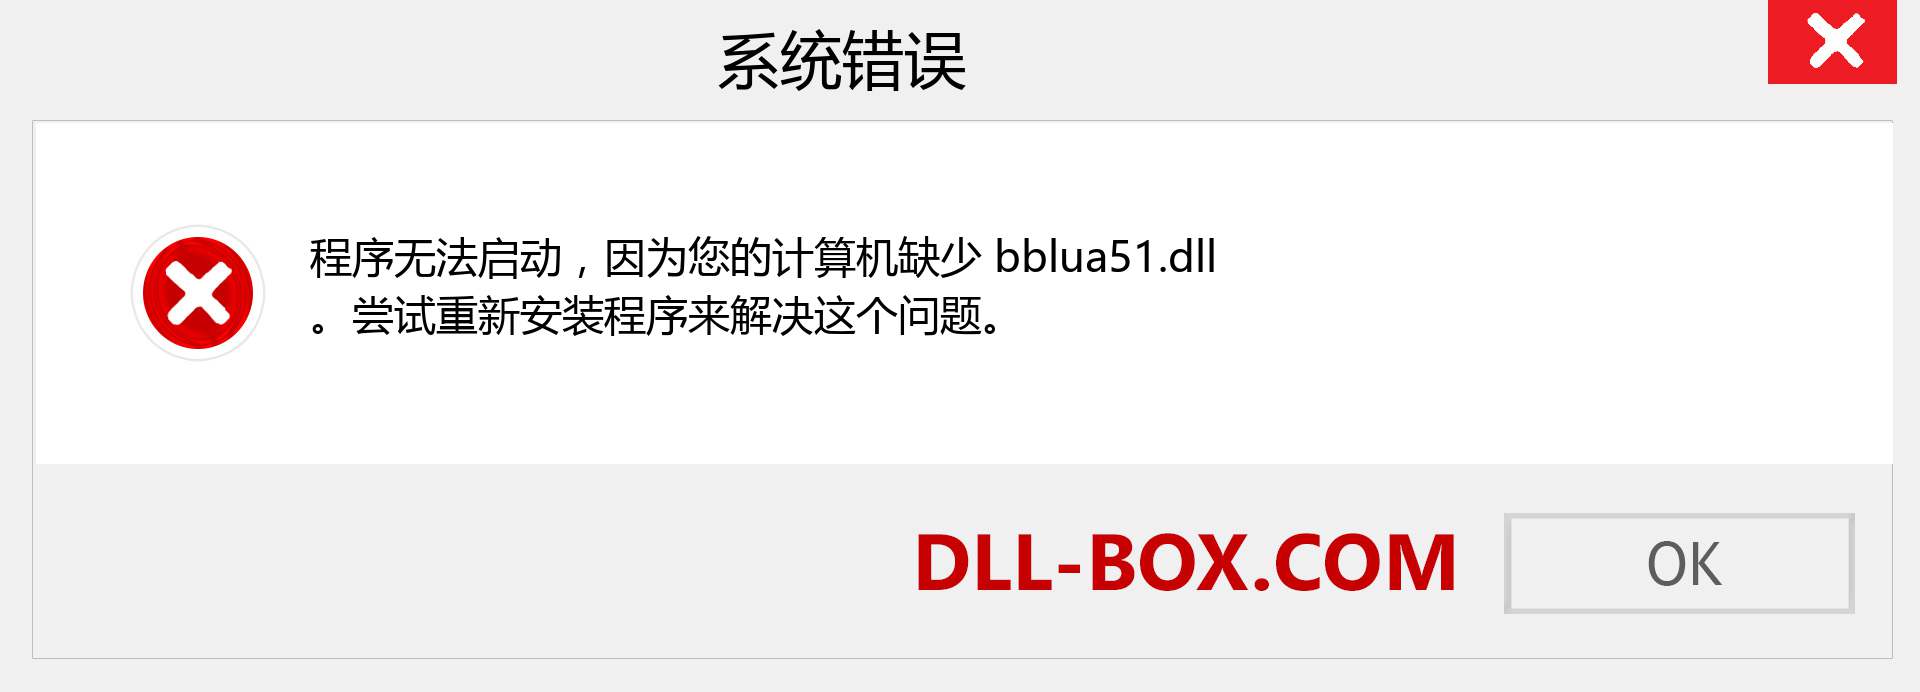 bblua51.dll 文件丢失？。 适用于 Windows 7、8、10 的下载 - 修复 Windows、照片、图像上的 bblua51 dll 丢失错误